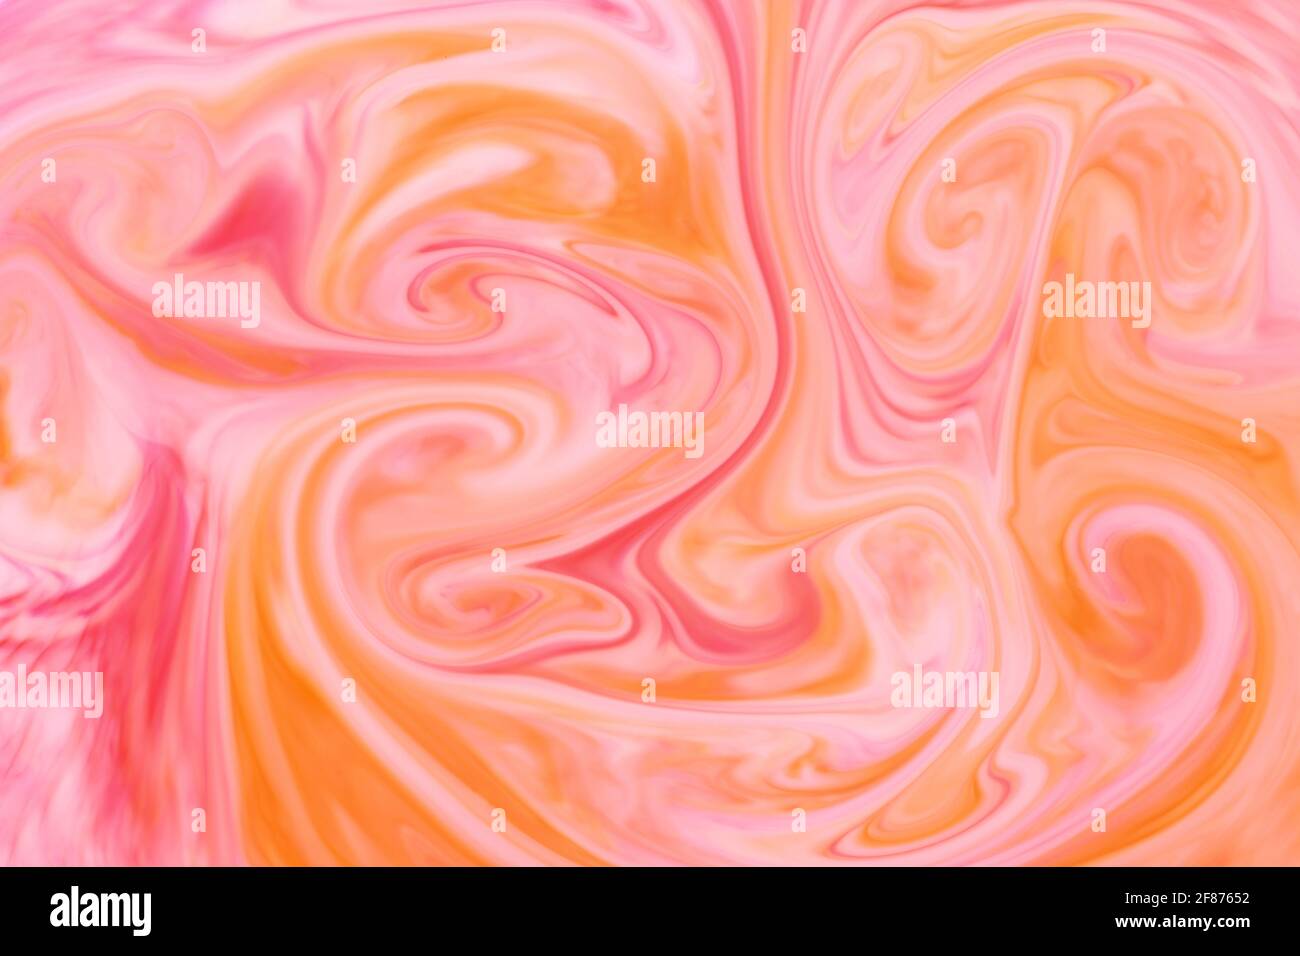 Trama astratta di sfondo di arancione e rosa vorticoso o scorrevole inchiostro o pigmento formando una miscela artistica di colori per un modello di progetto Foto Stock